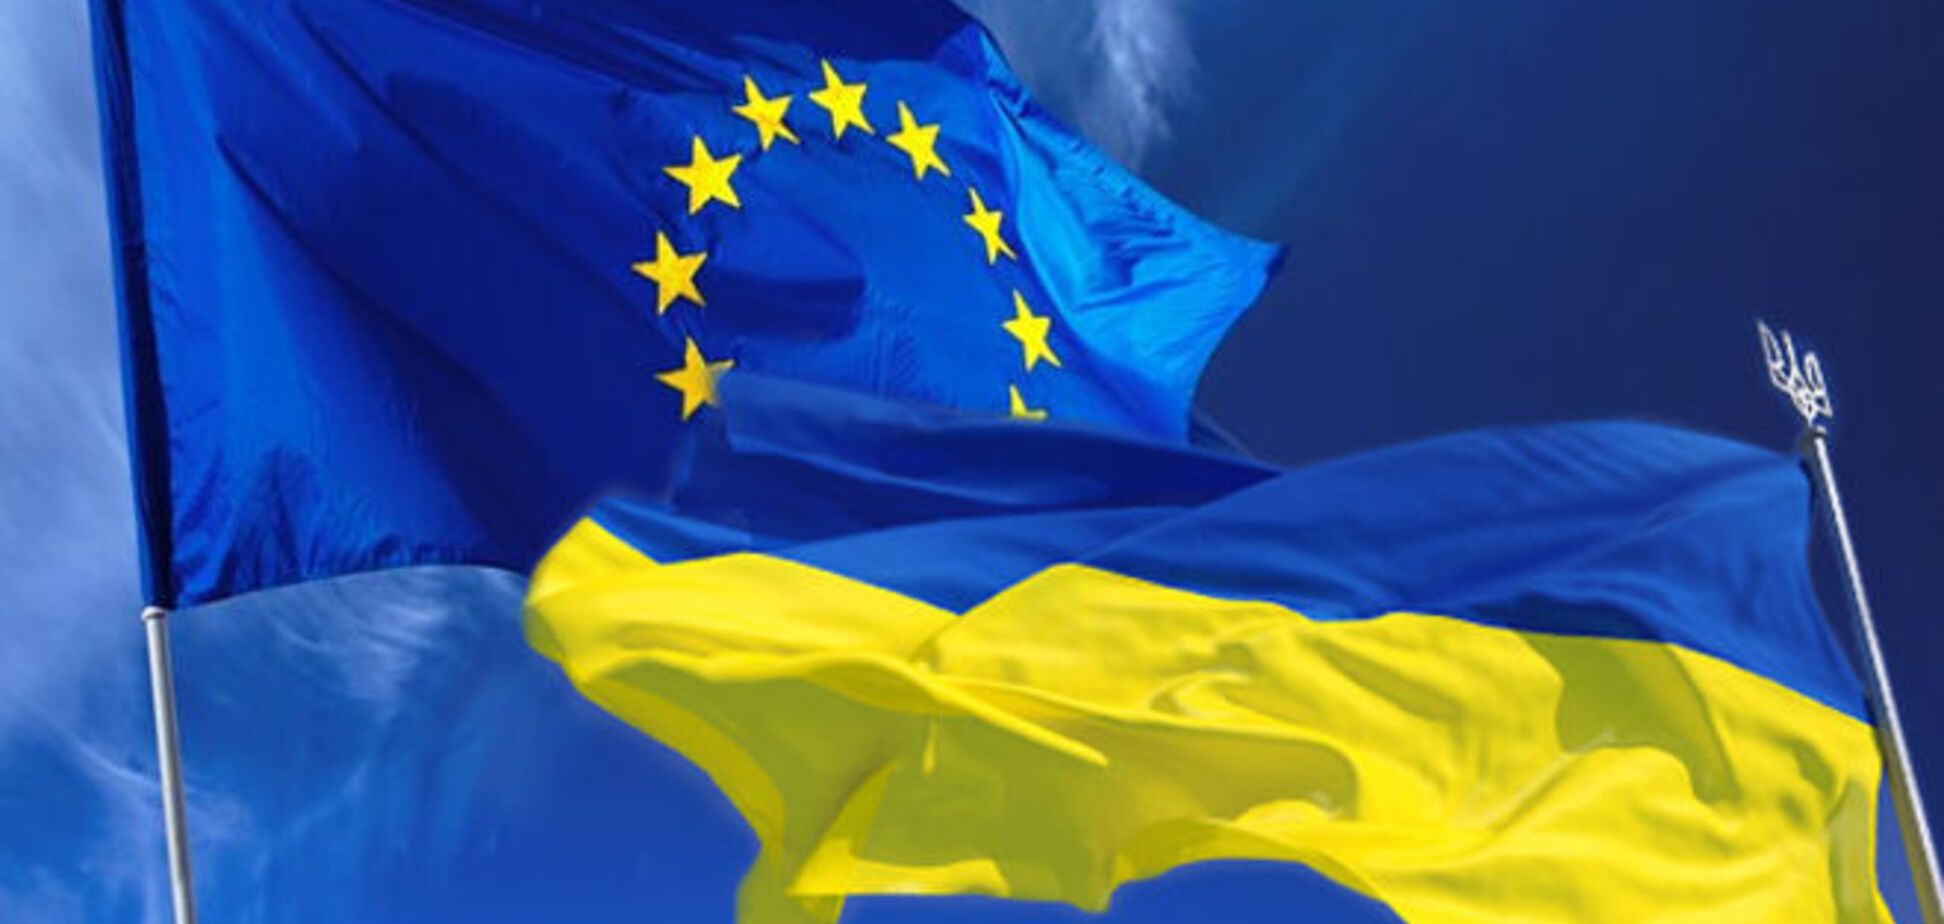 Евросоюз влезет в международные долги, но Украине поможет